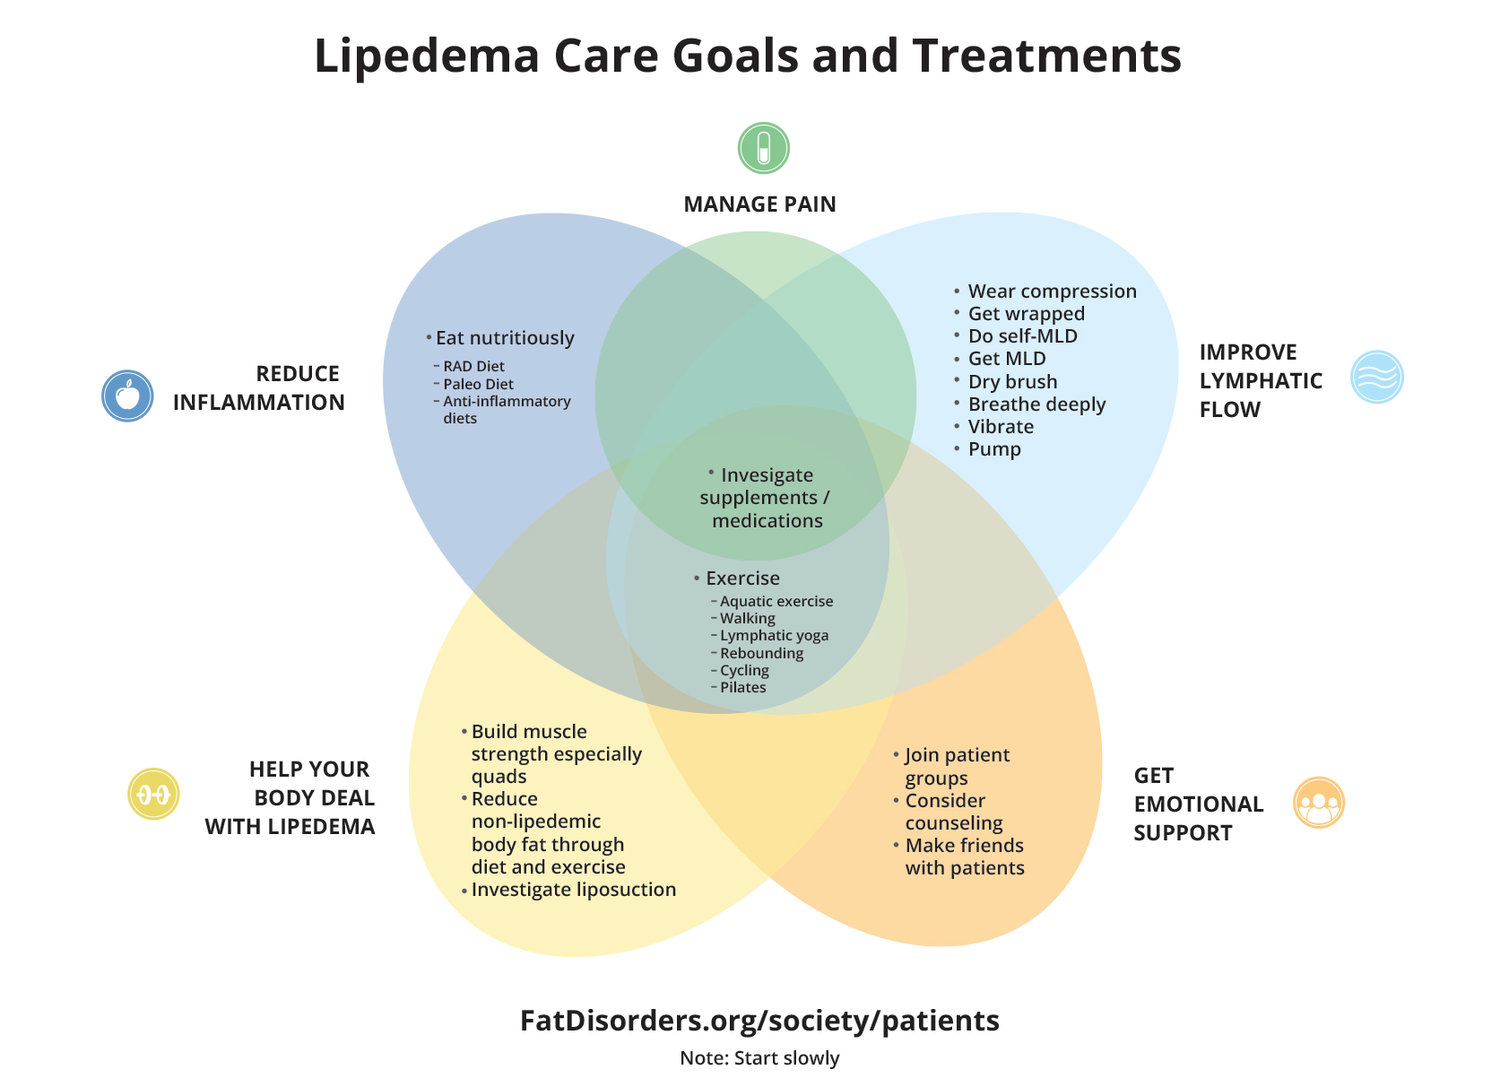 Lipedema Care Goals and Treatments diagram